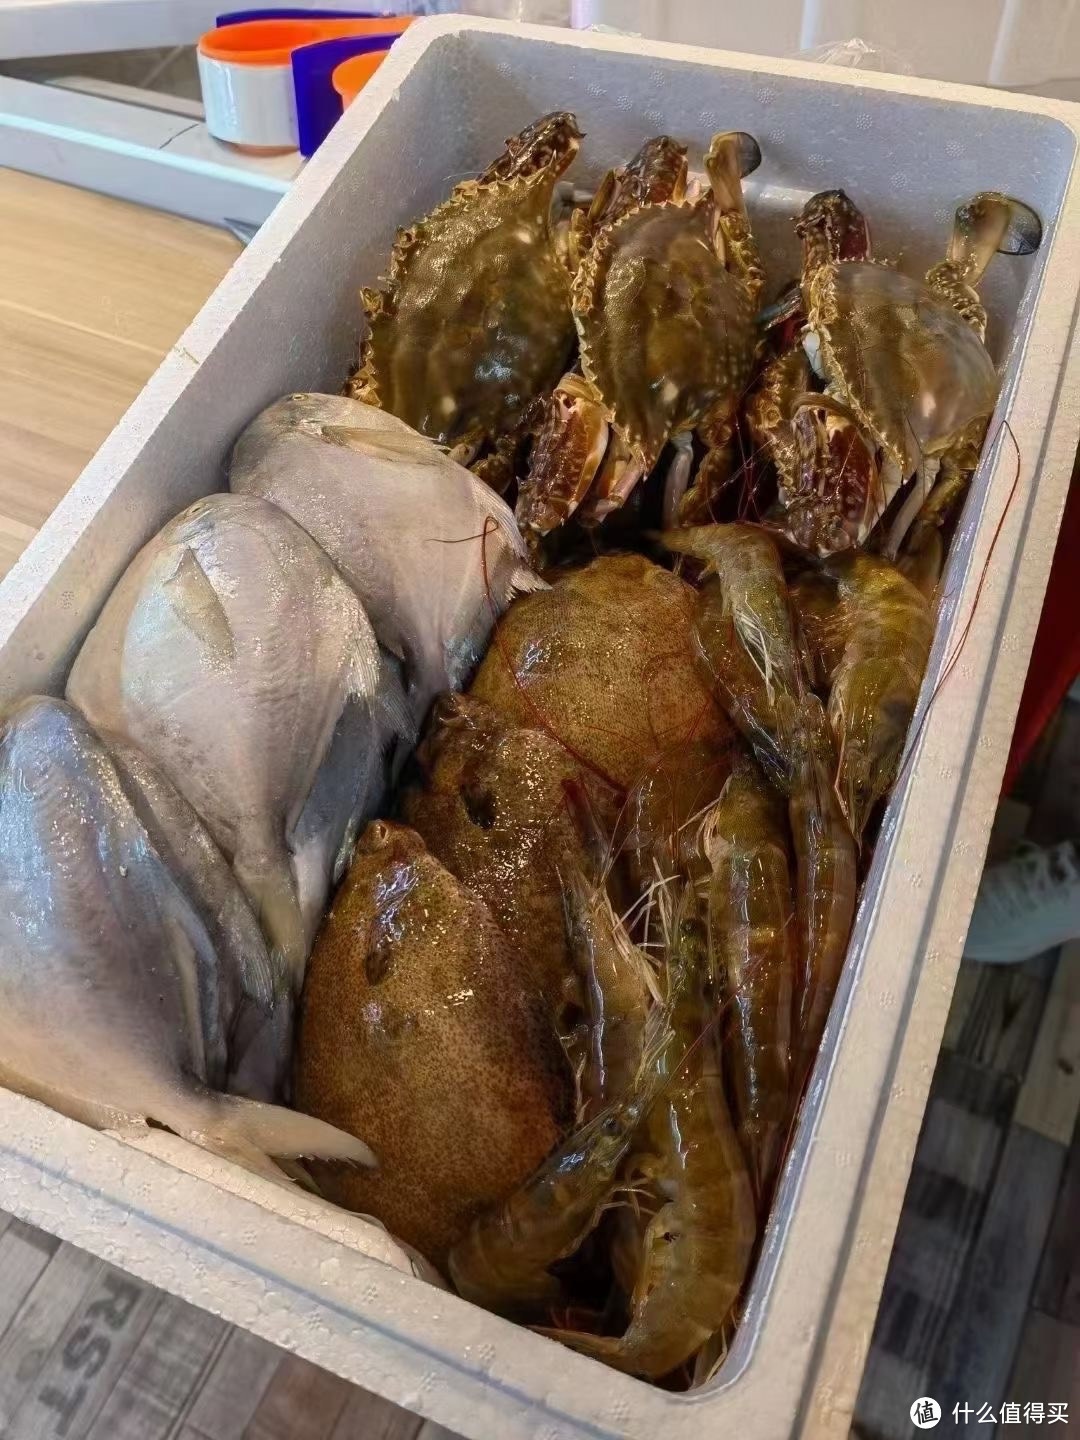 海鲜礼盒